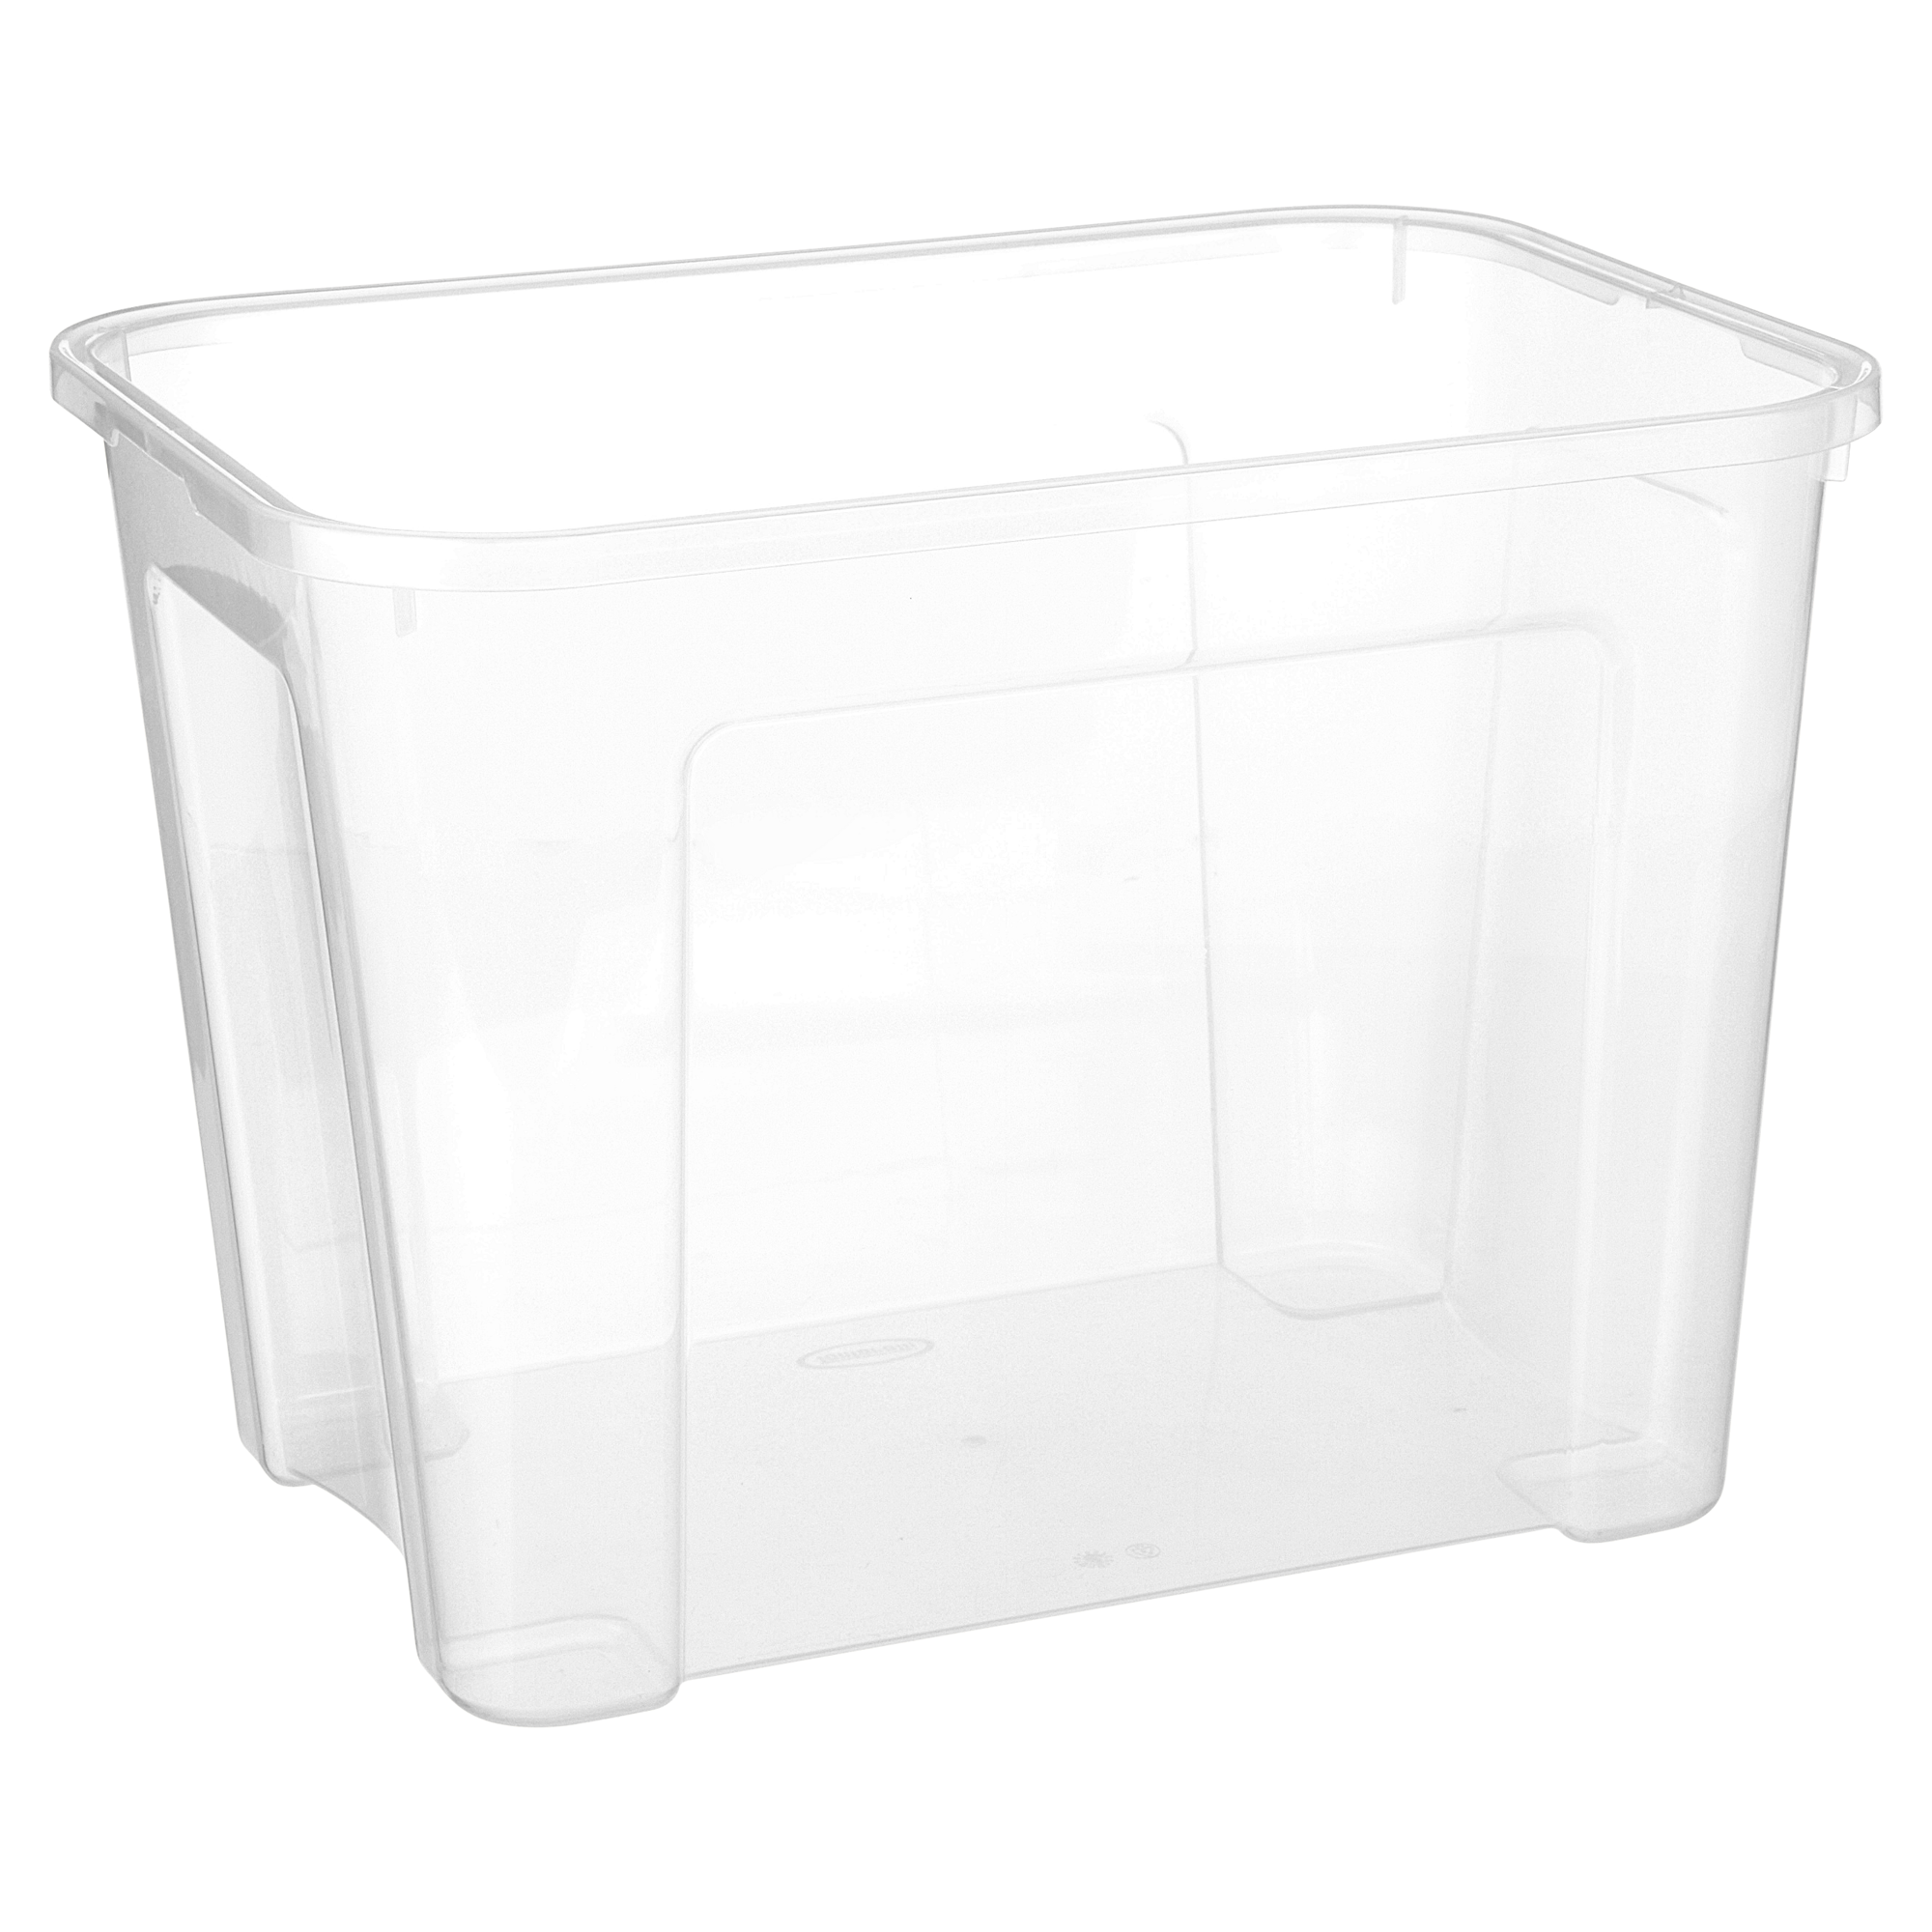 Box transparent 18 l + product picture